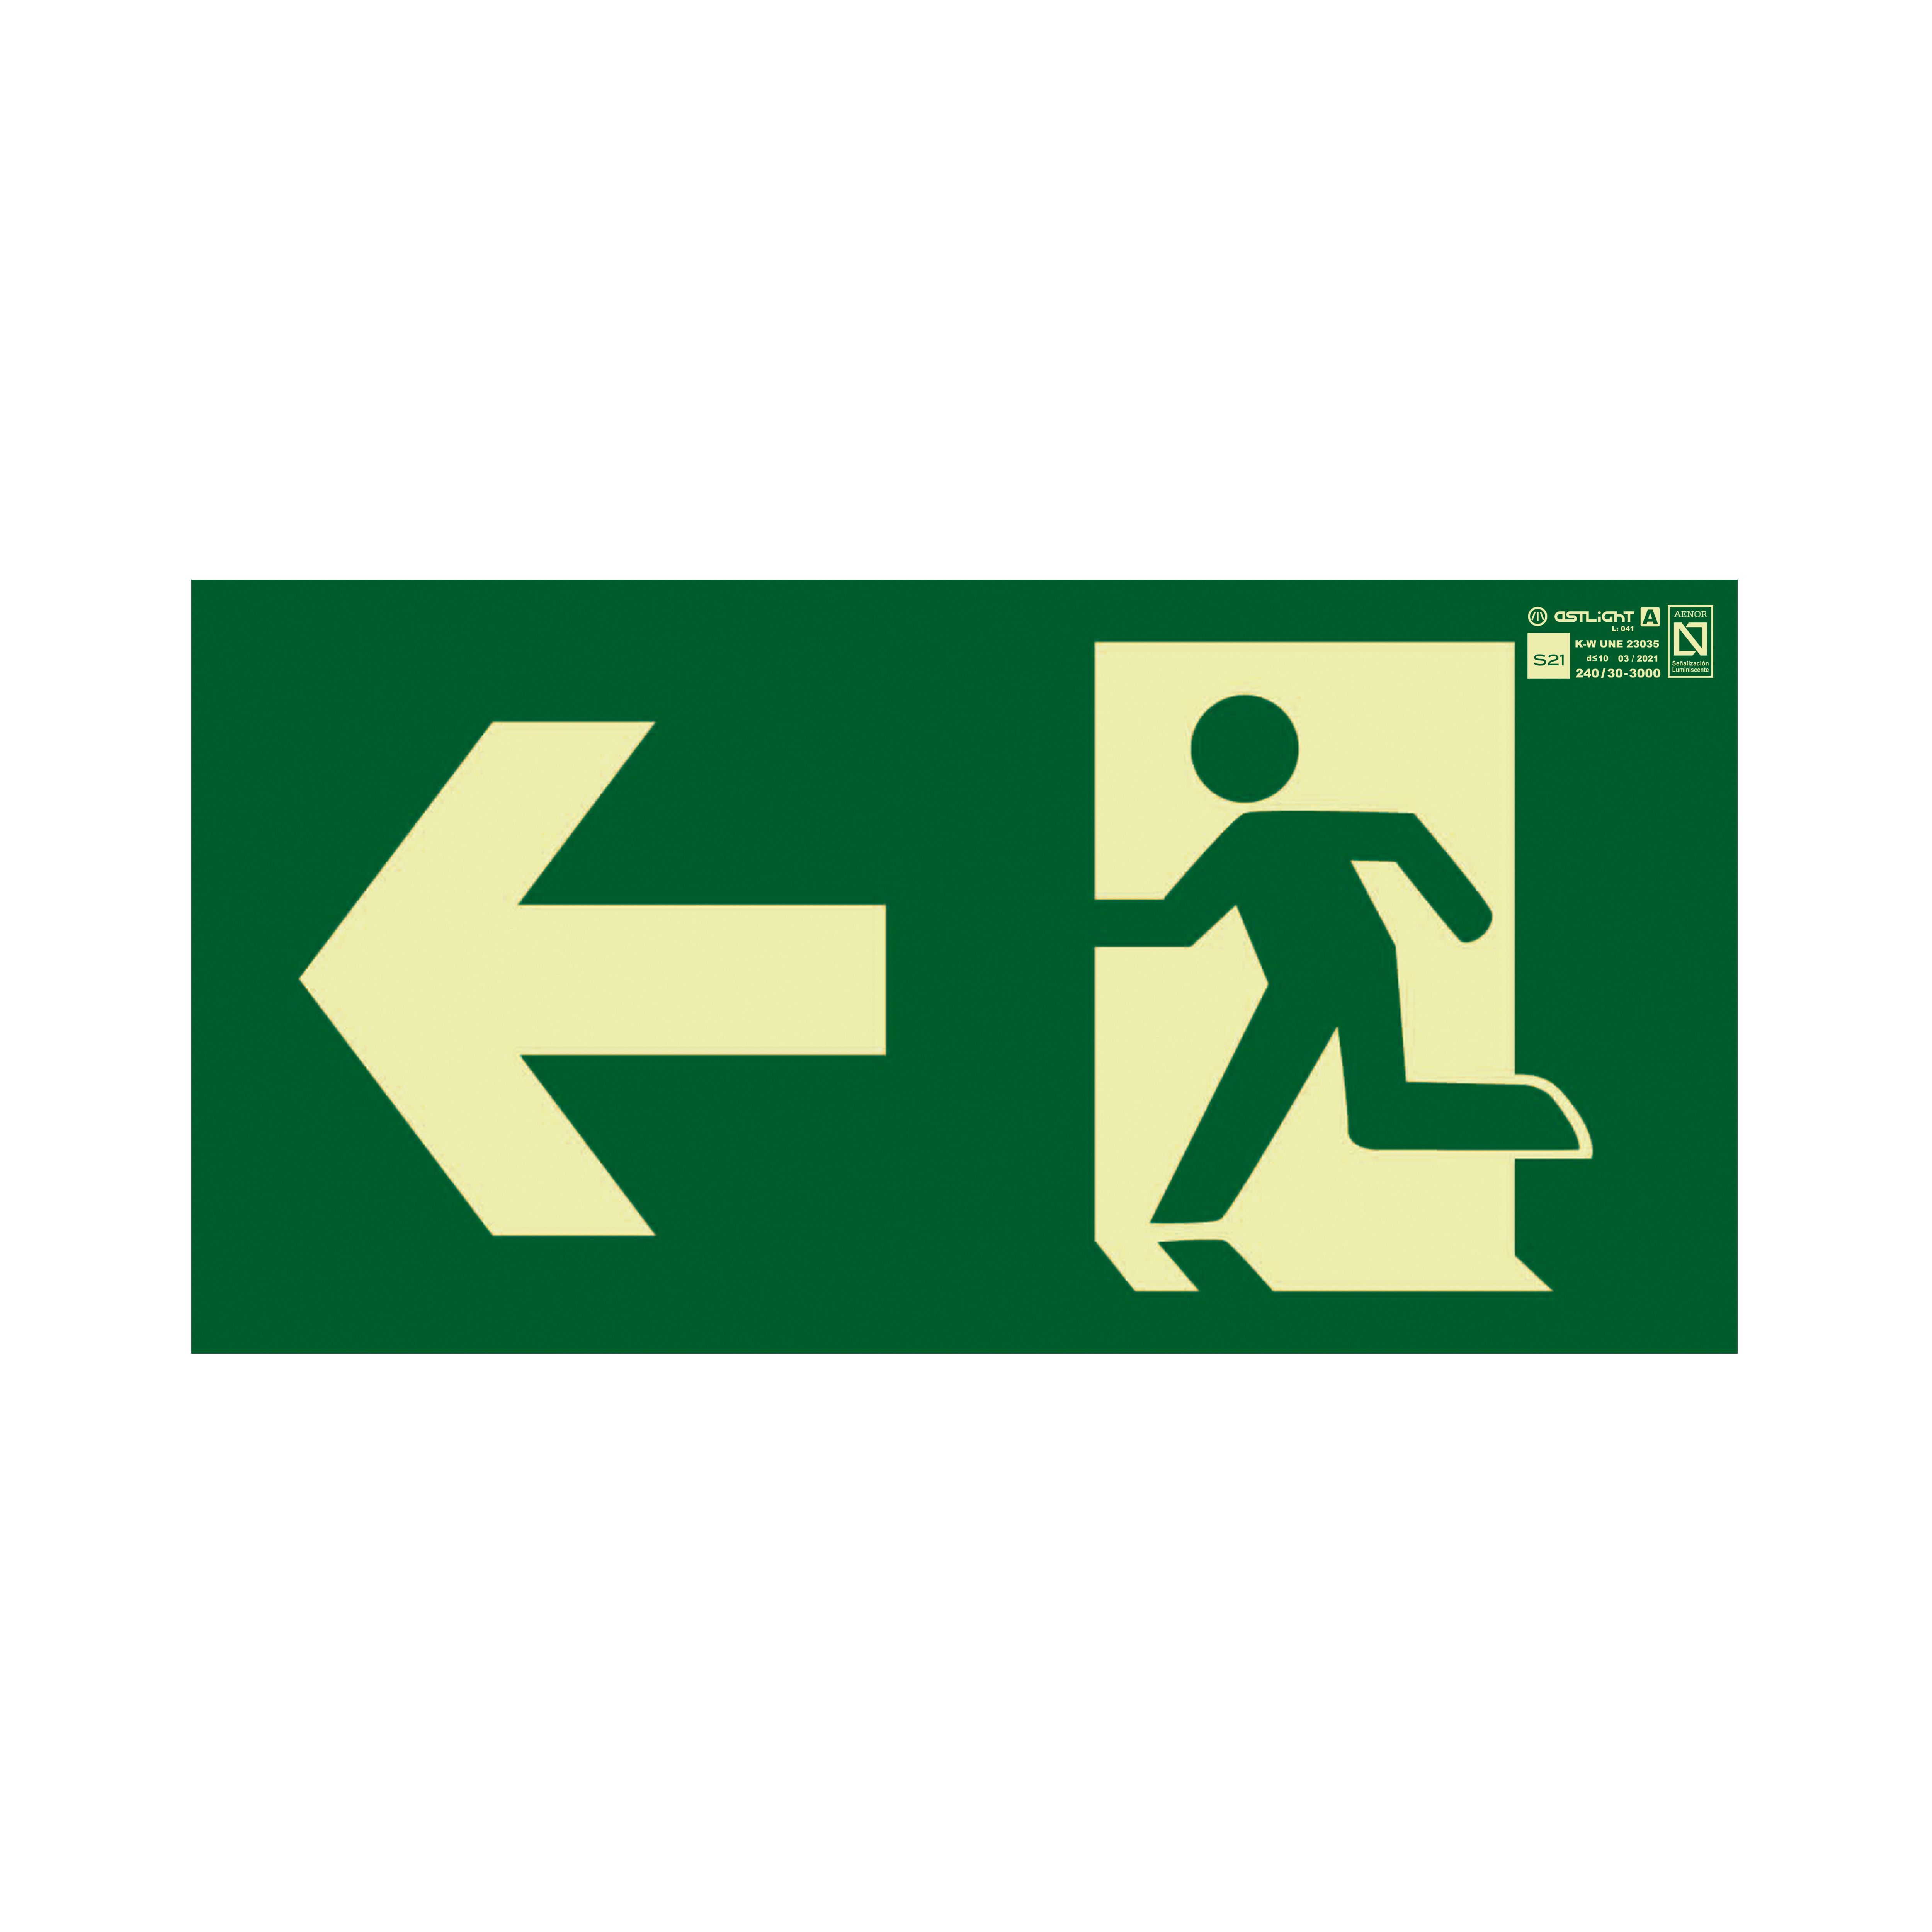 Señal de salida de emergencia con flecha hacia la izquierda Astlight, idioma: Español, texto: Evacuacion Izquierda